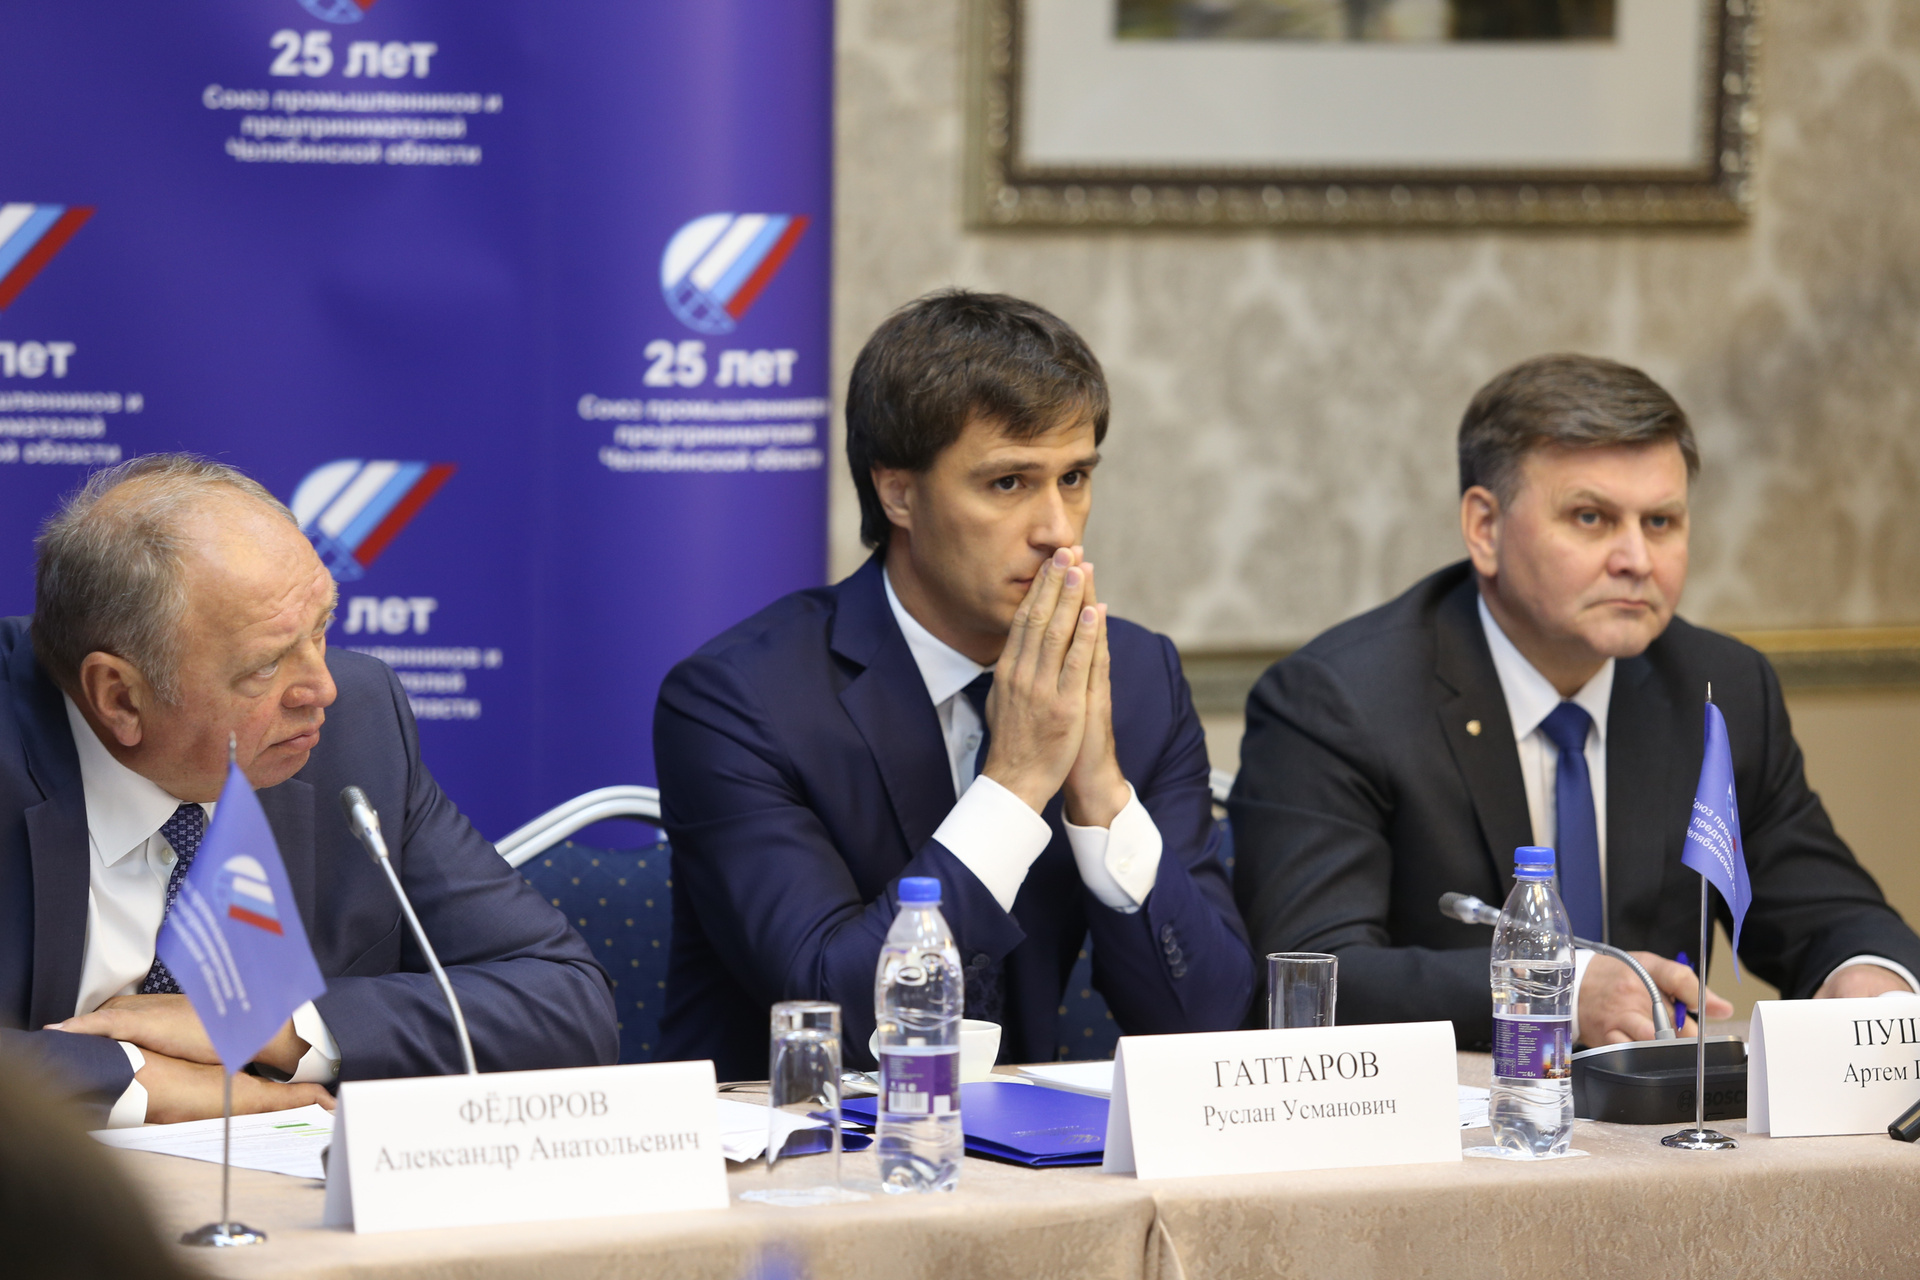 Руслан Гаттаров посетовал, что бизнес не спешит сотрудничать с государством